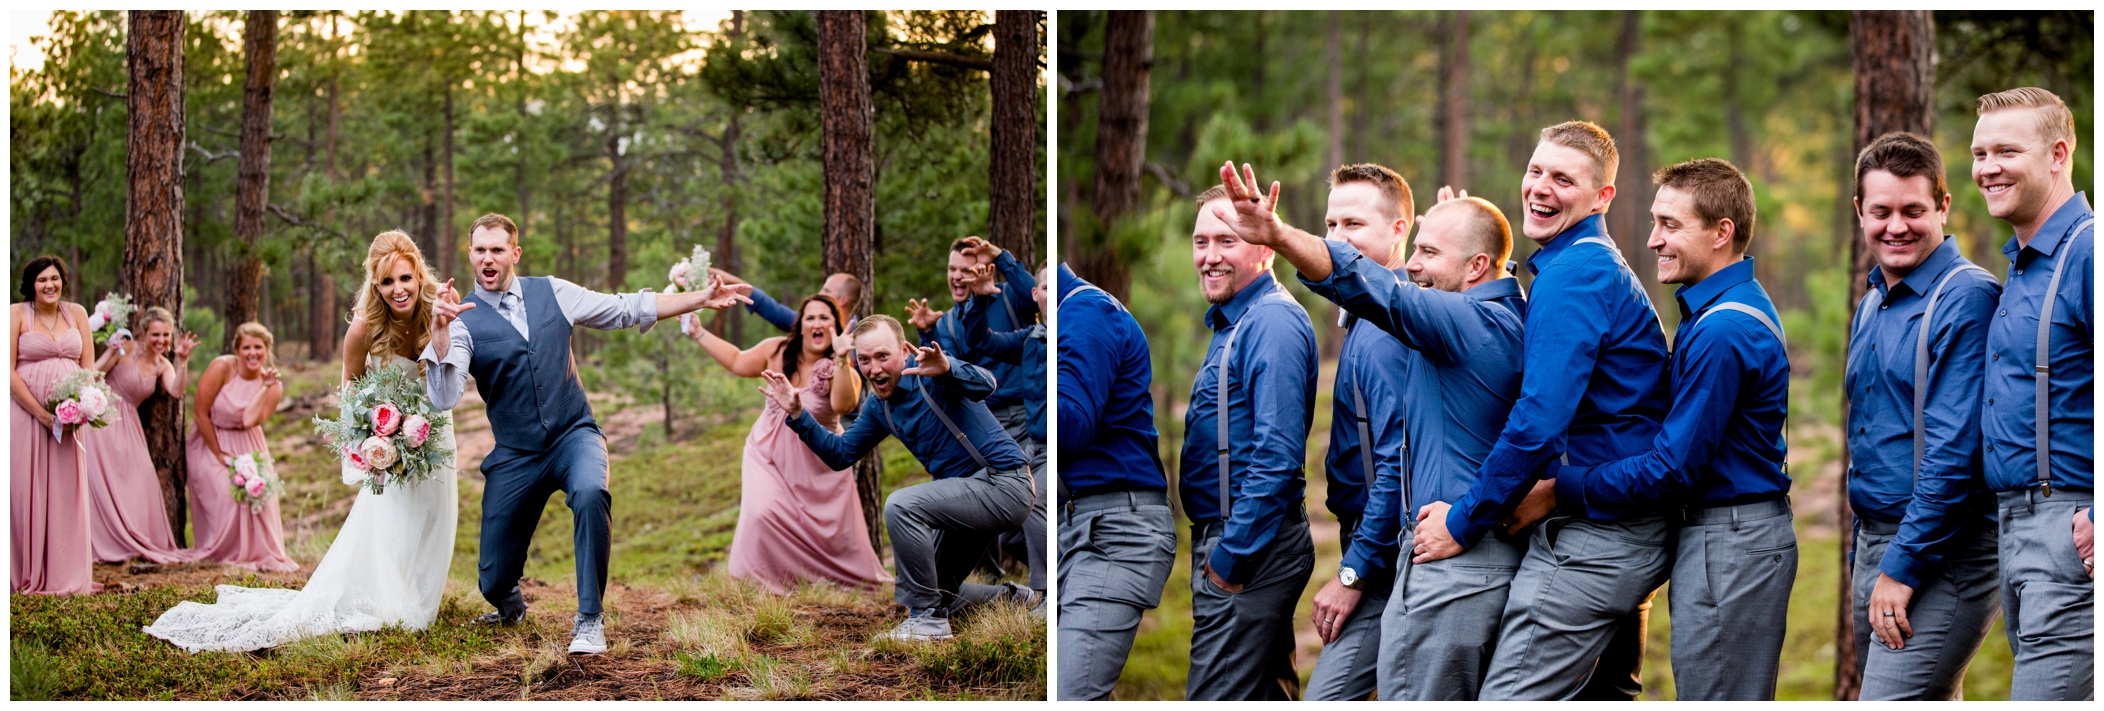 funny wedding party photos in Colorado 